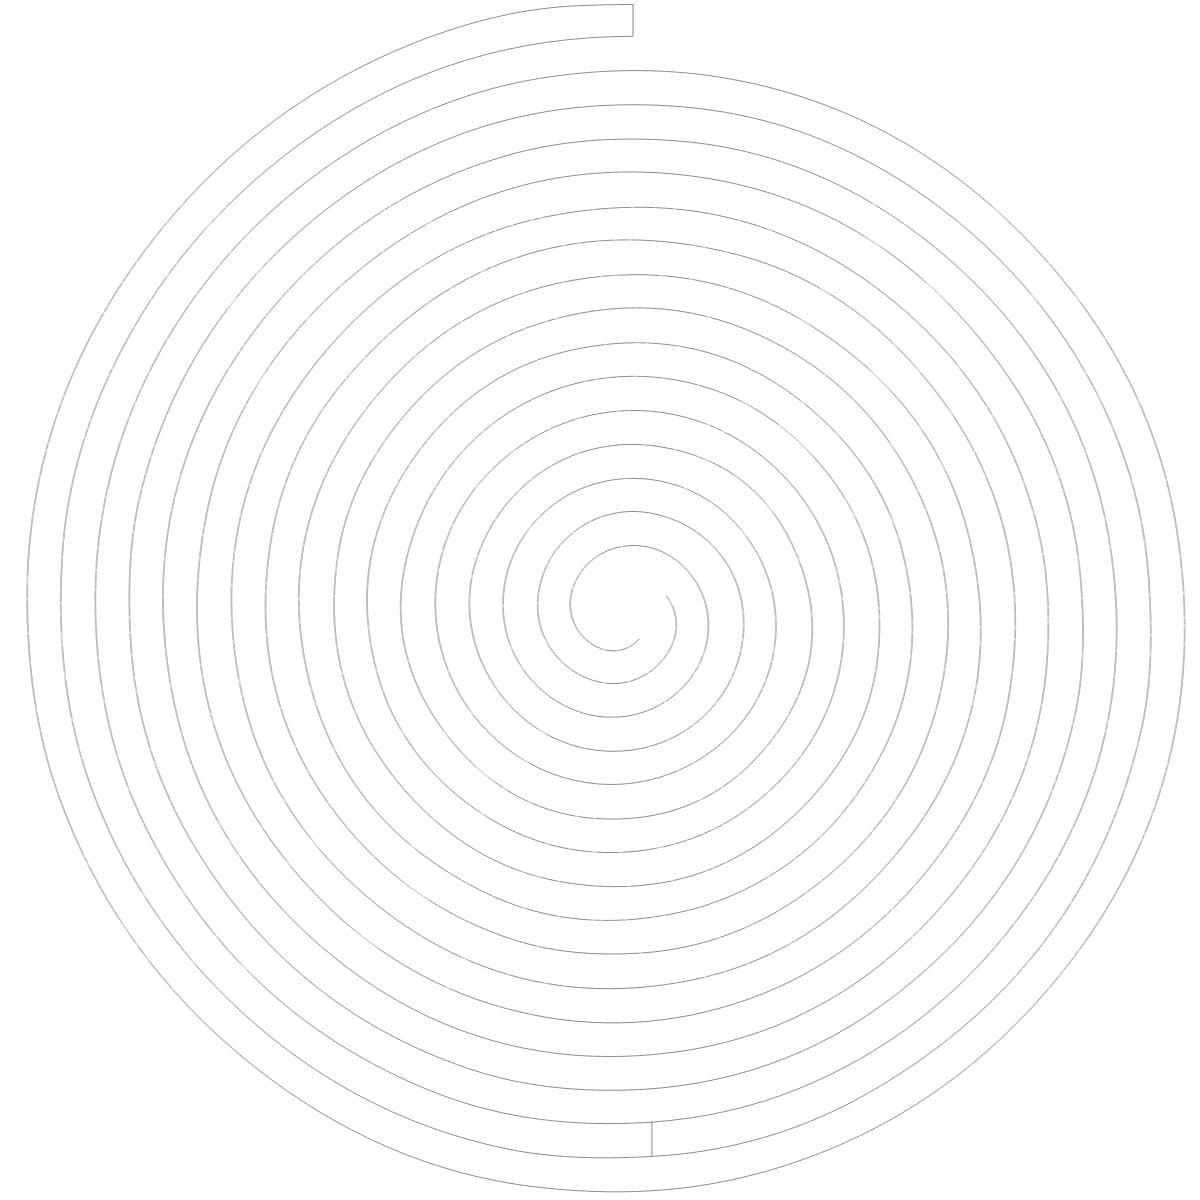 Spiral 1